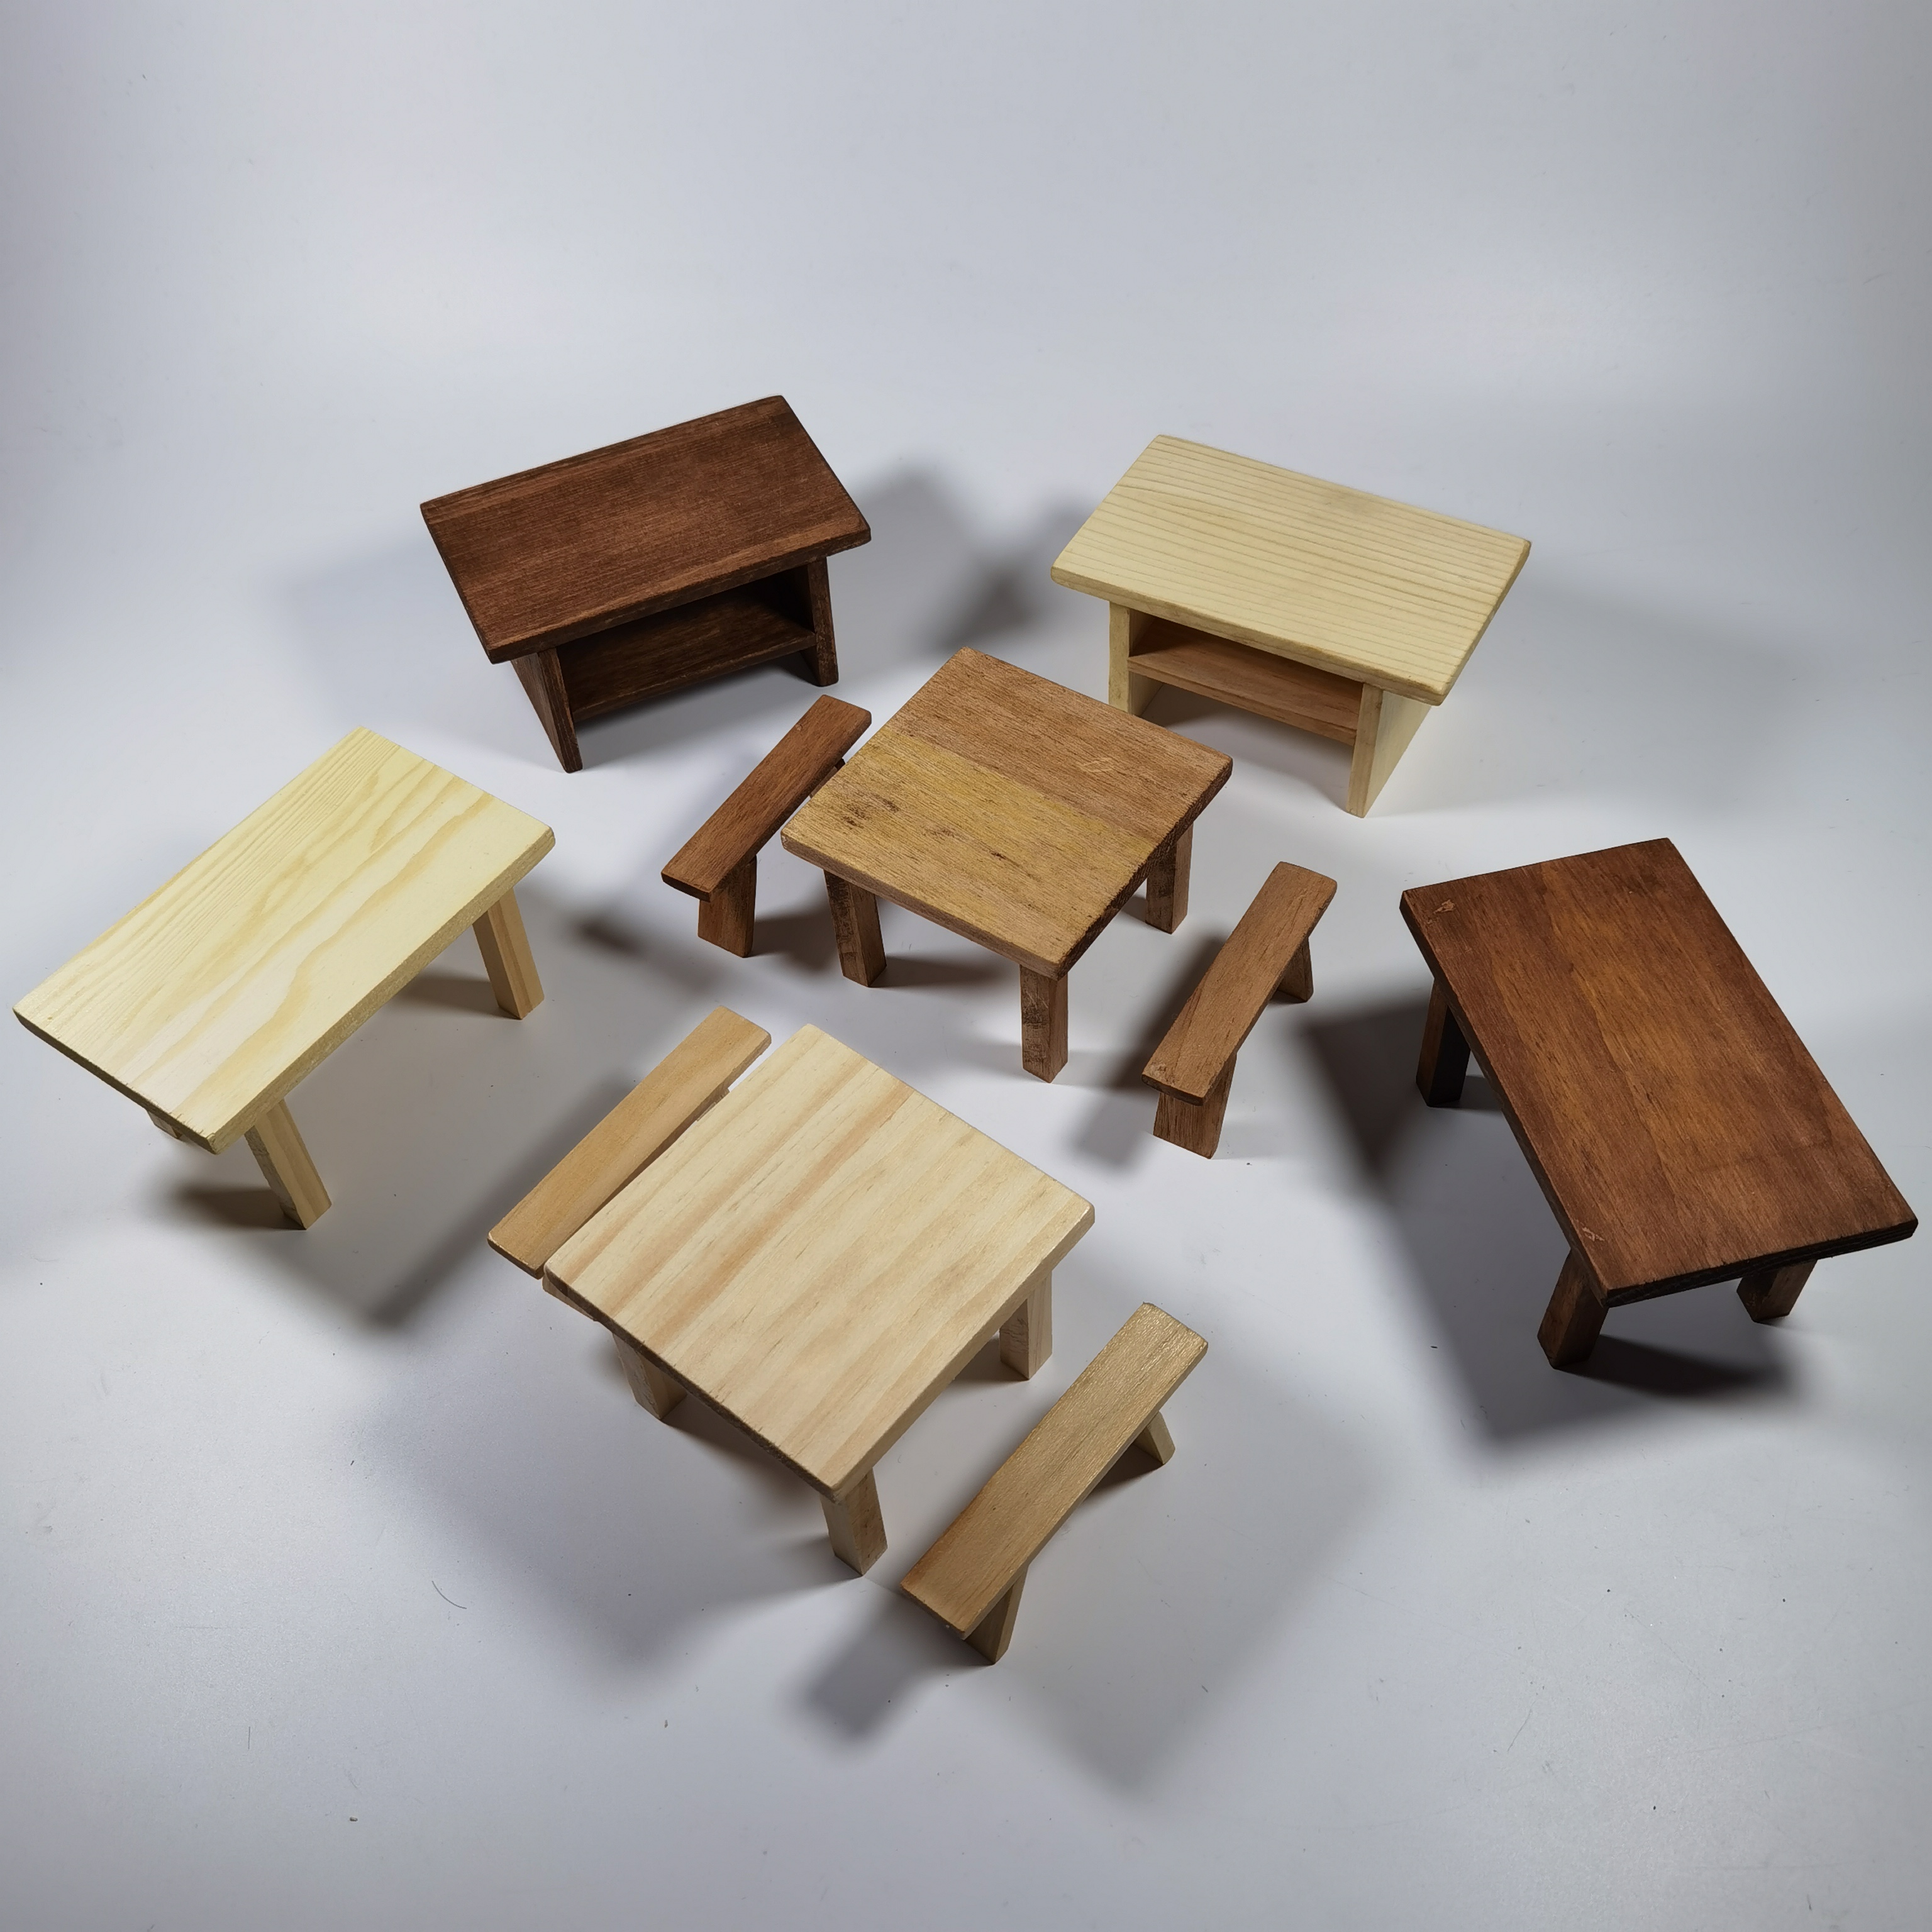 迷你厨房实木料理桌子模型合集微缩食玩娃娃屋配件